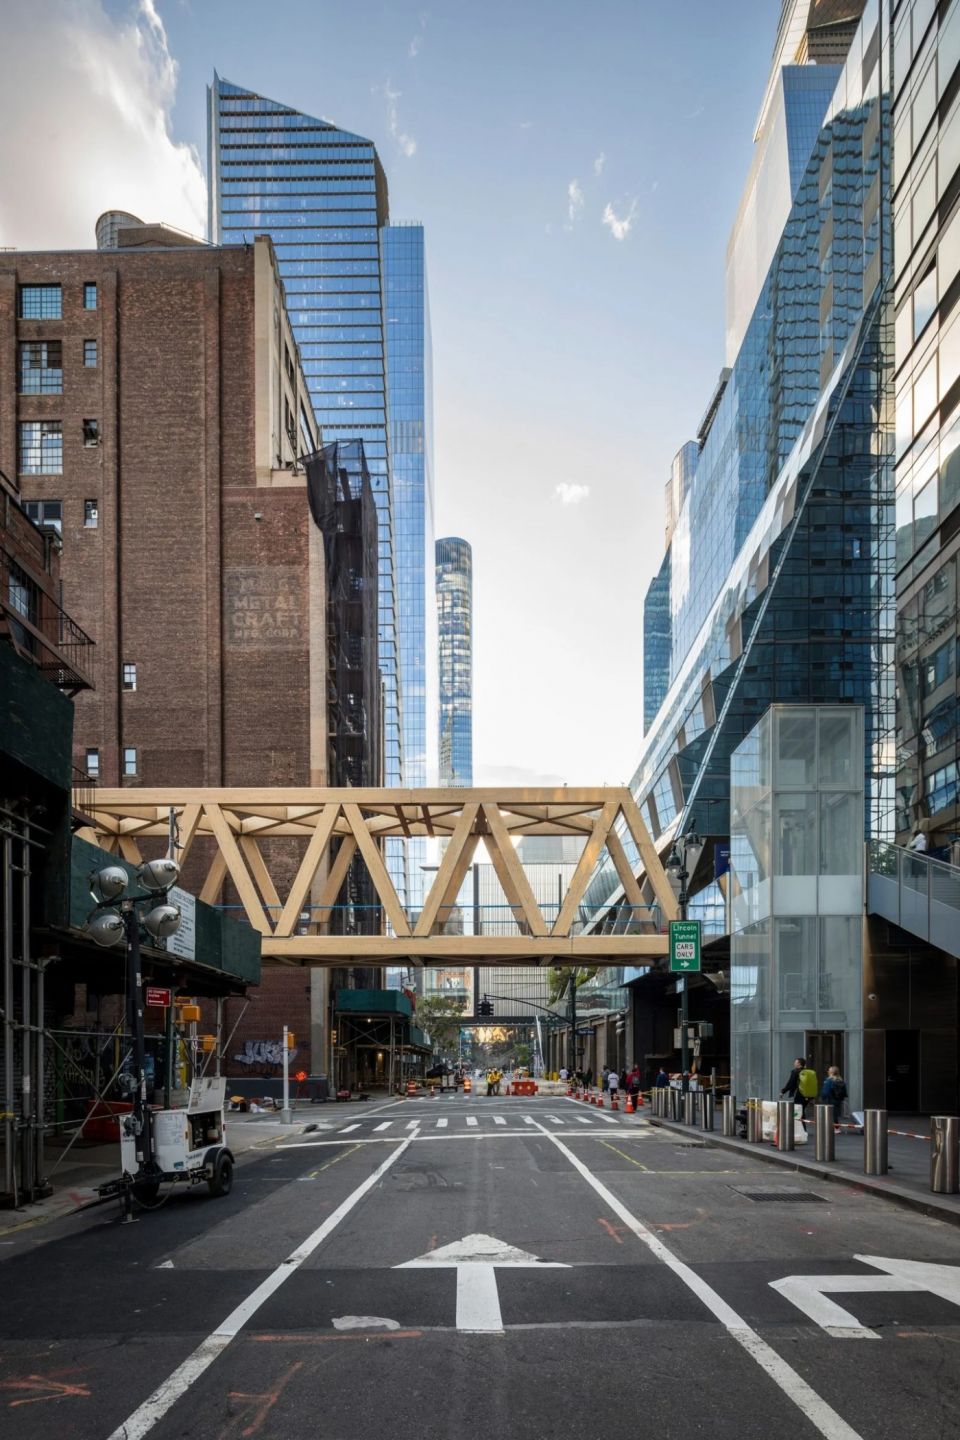 В Нью Йорке дополнили знаменитую эстакаду High Line новым фрагментом из клееной древесиныTimber Bridge - мост из клееной древесины, соединяющий парк High Line, расположенный на бывшей железнодорожной эстакаде, с Пенсильванским вокзалом. Проект разработан архитектурной студией Skidmore, Owings and Merrill (SOM) в сотрудничестве с James Corner Field Operations.128-тонное двухсекционное сооружение, выполненное из бруса Глулам, длиной 92 метра пересекает целый квартал. Деревянные пролетные конструкции опираются на Y-образные стальные пилоны высотой 8 м.